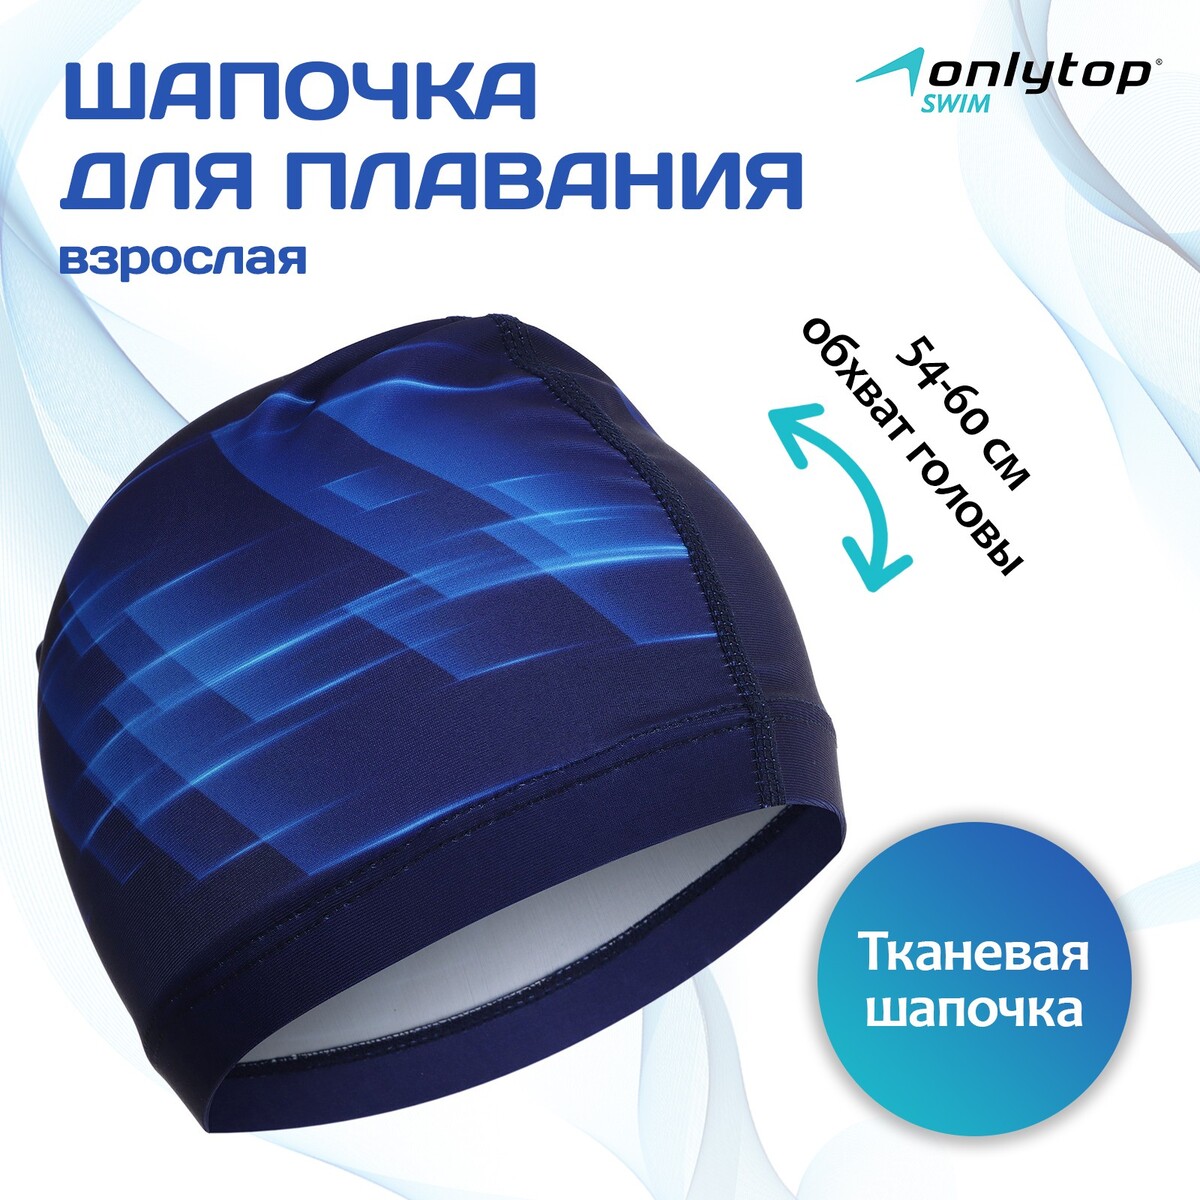 Шапочка для плавания взрослая onlytop dynamics, тканевая, обхват 54-60 см шапочка для плавания atemi сс103 тканевая с силиконовым покрытием синяя